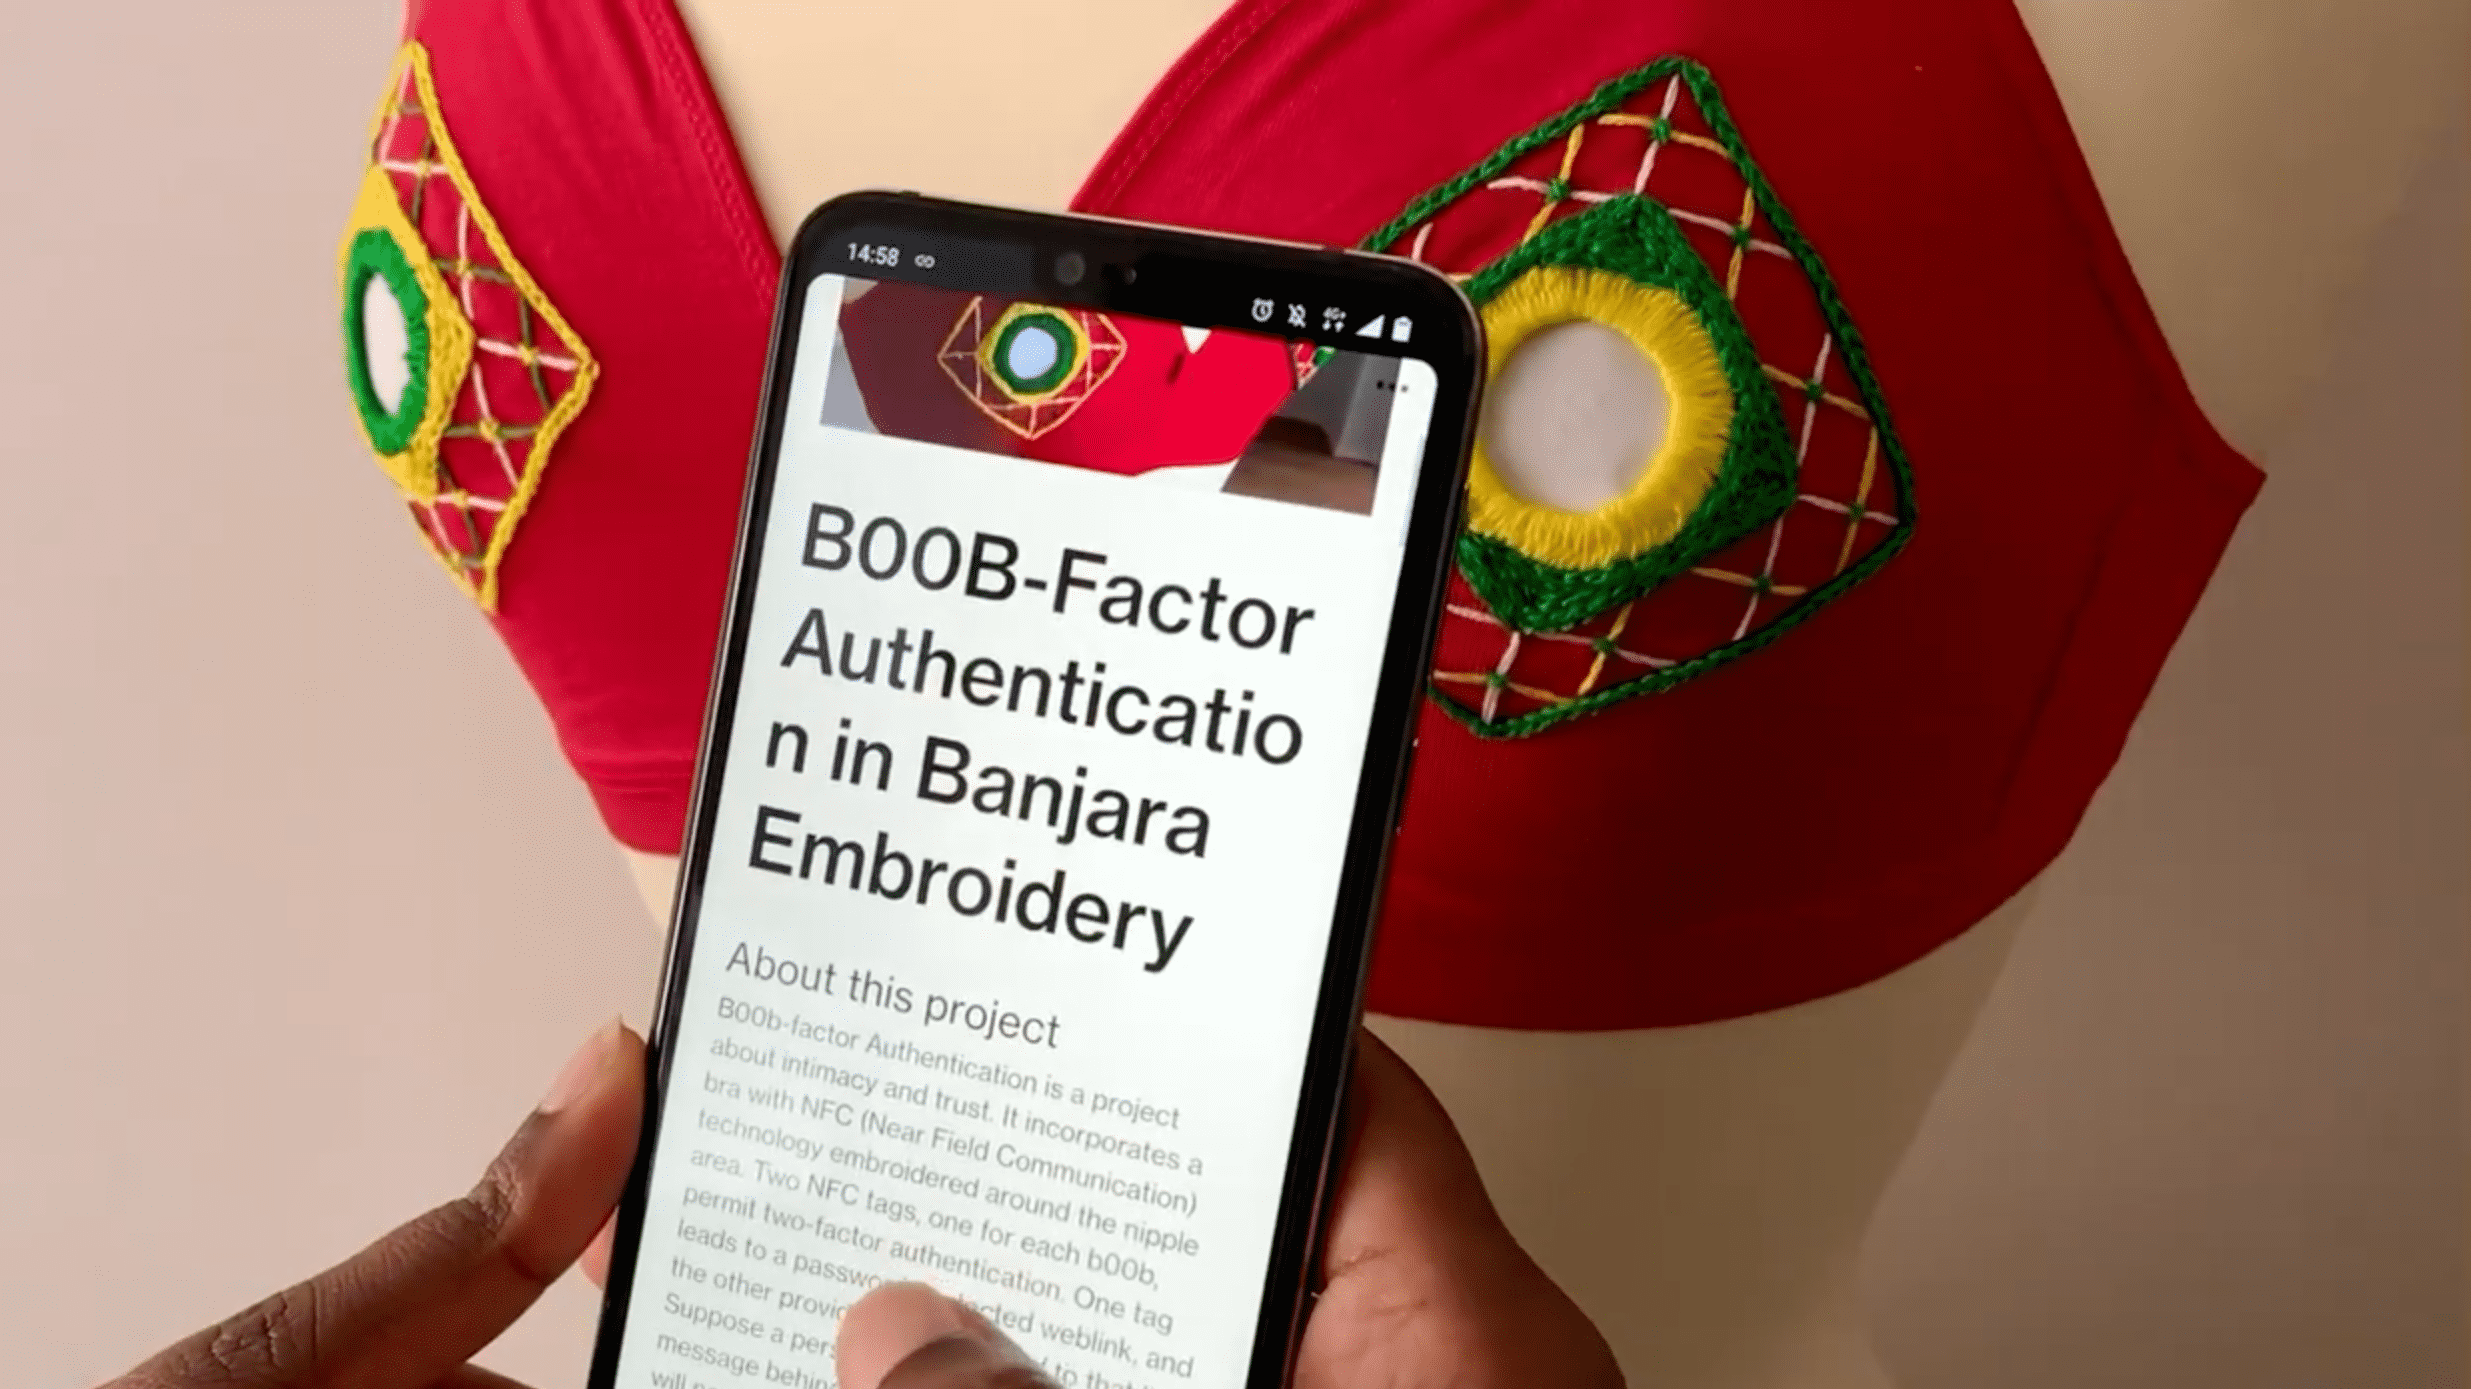 Ein Smartphone mit dem Artikel "B00b-Factor Authentication" vor einem roten BH mit Stickereien und NFC-Tags.